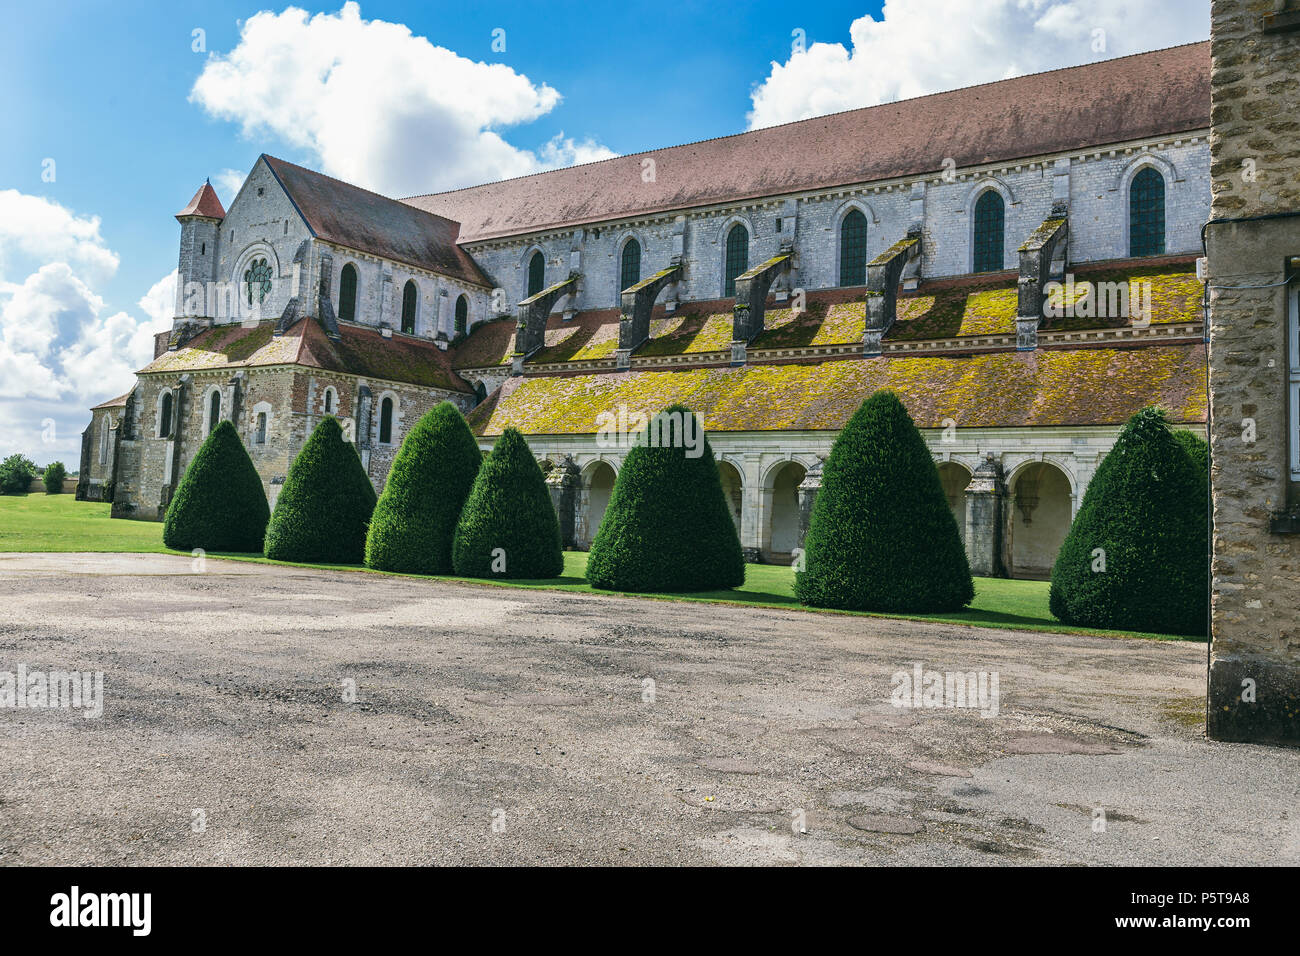 Abtei in Frankreich Pontigny, die ehemalige Zisterzienserabtei in Frankreich, einer der fünf ältesten und wichtigsten Klöster der Orde. Stockfoto